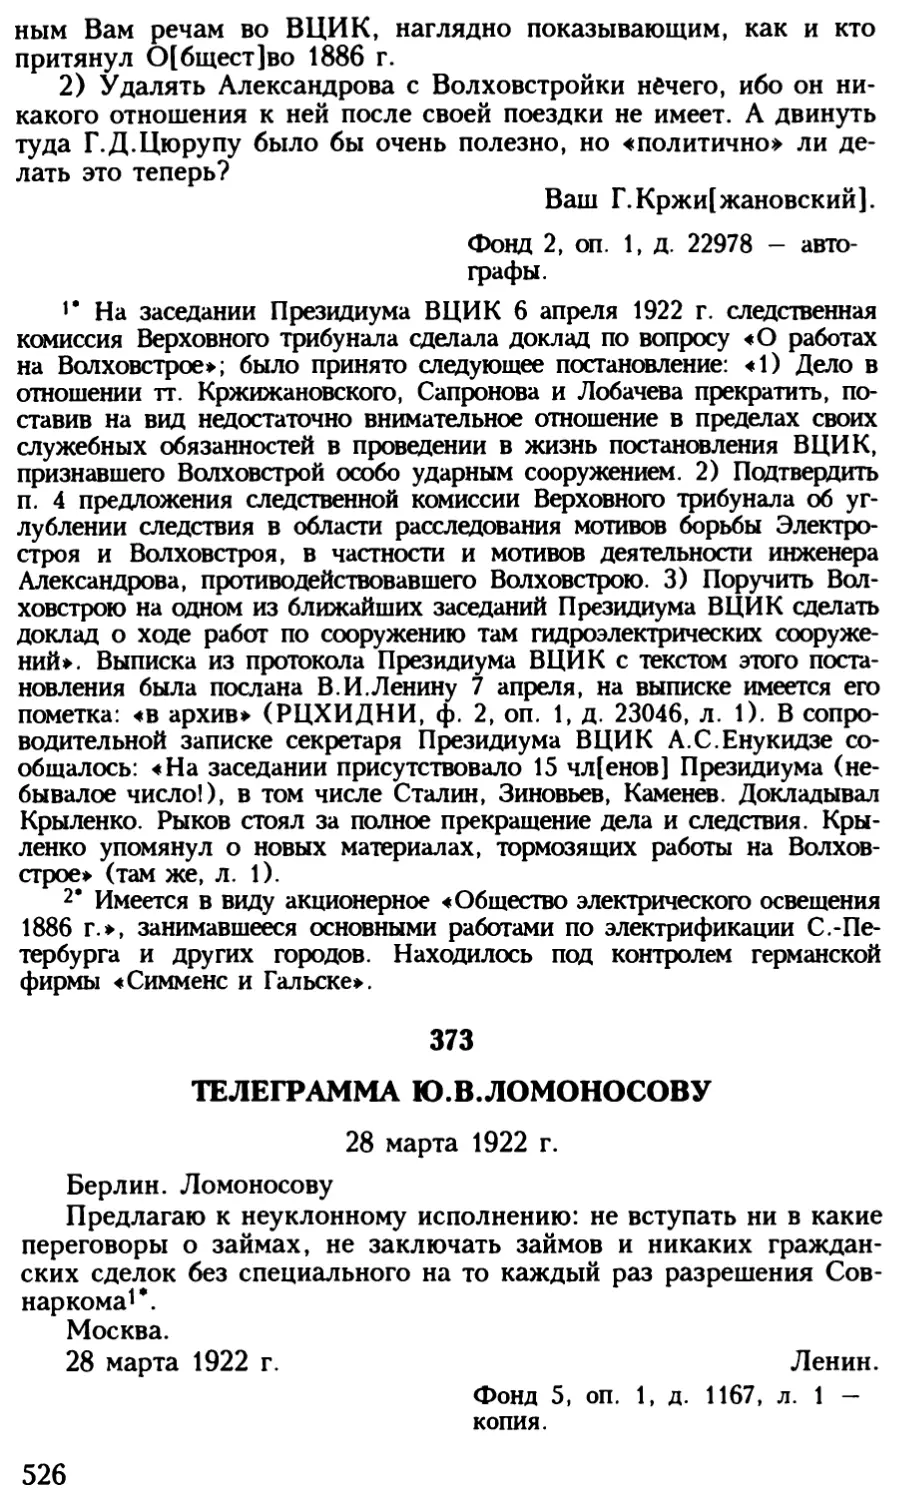 373. Телеграмма Ю.В.Ломоносову. 28 марта 1922 г